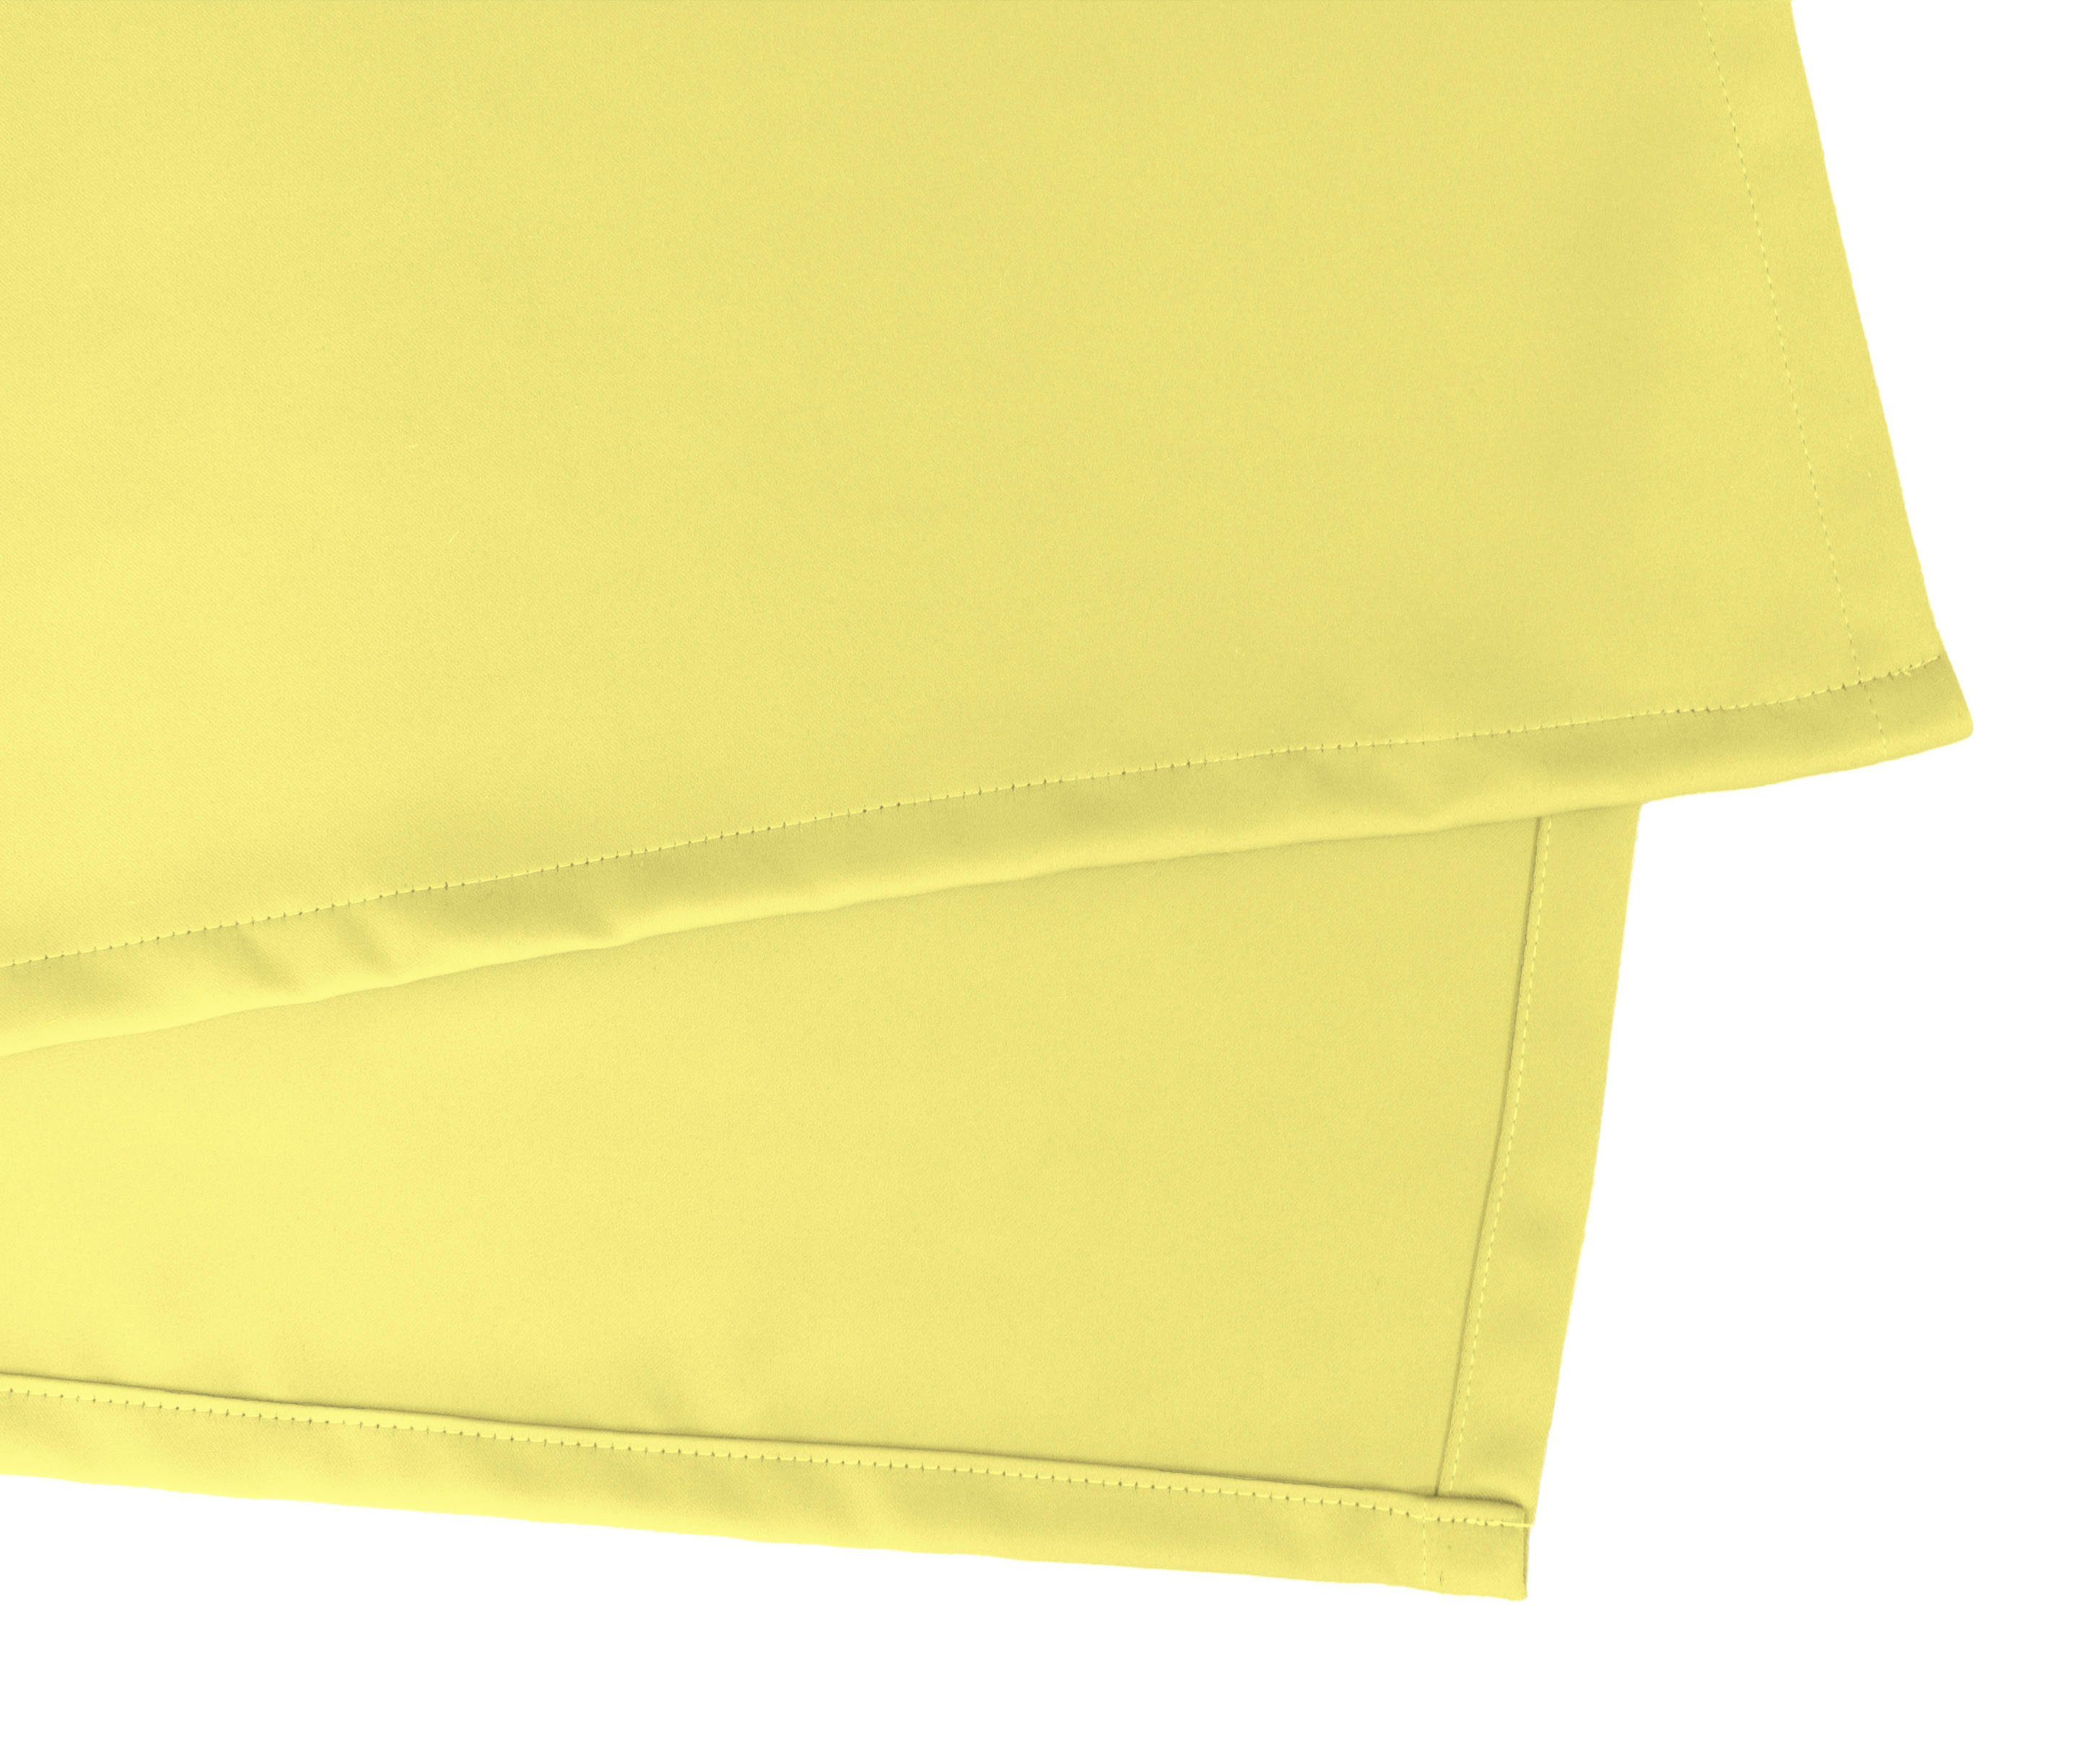 sparend,Wärmeschutz,blickdicht,verschiedene gelbgrün Kräuselband Vorhang (1 Leon, verdunkelnd, St), Größen Energie Verdunkler, VHG,